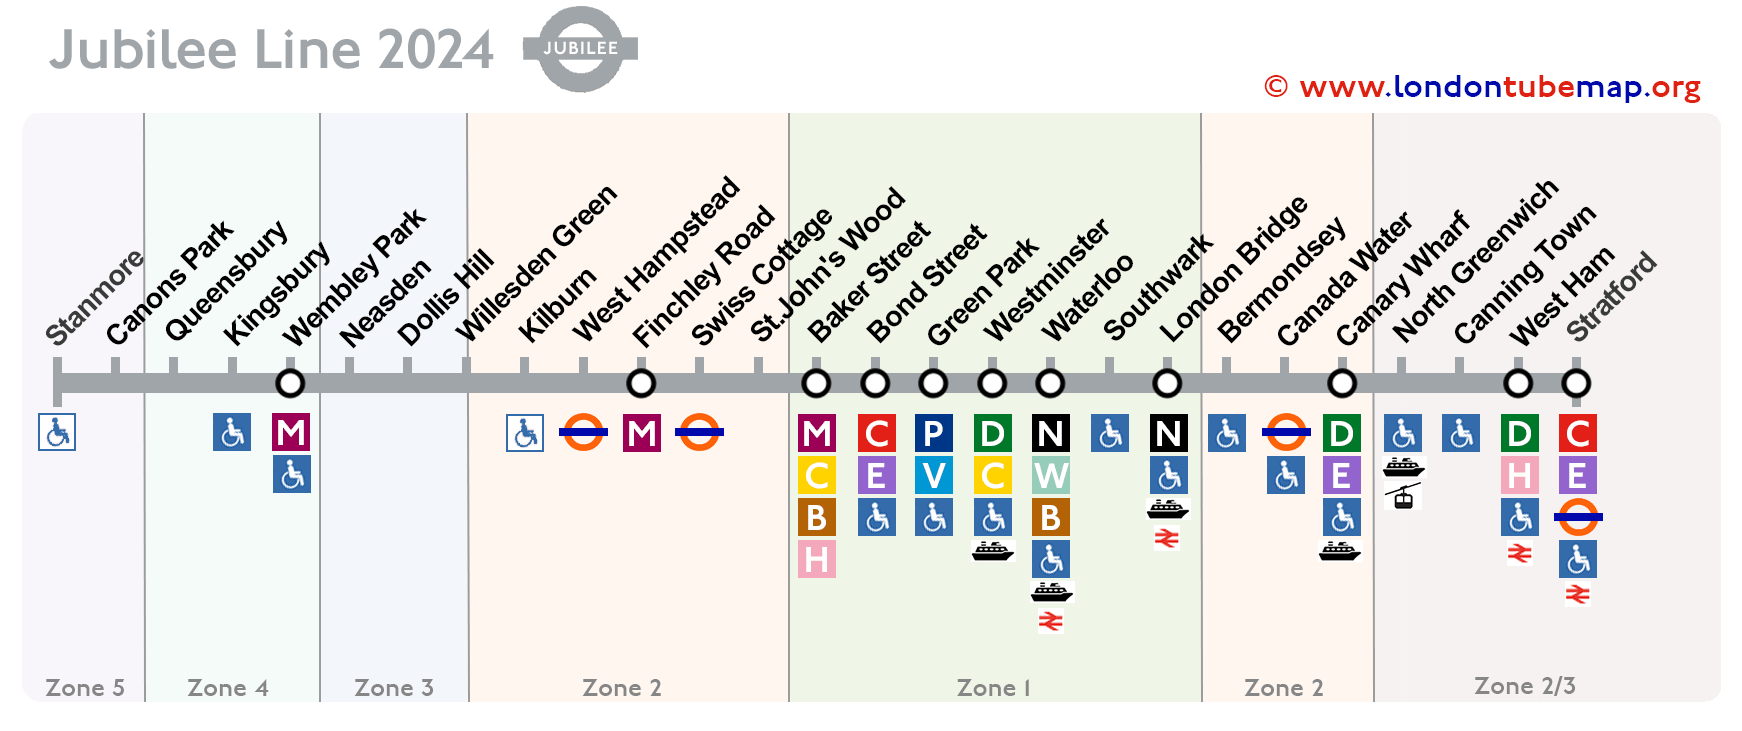 Jubilee line map 2024